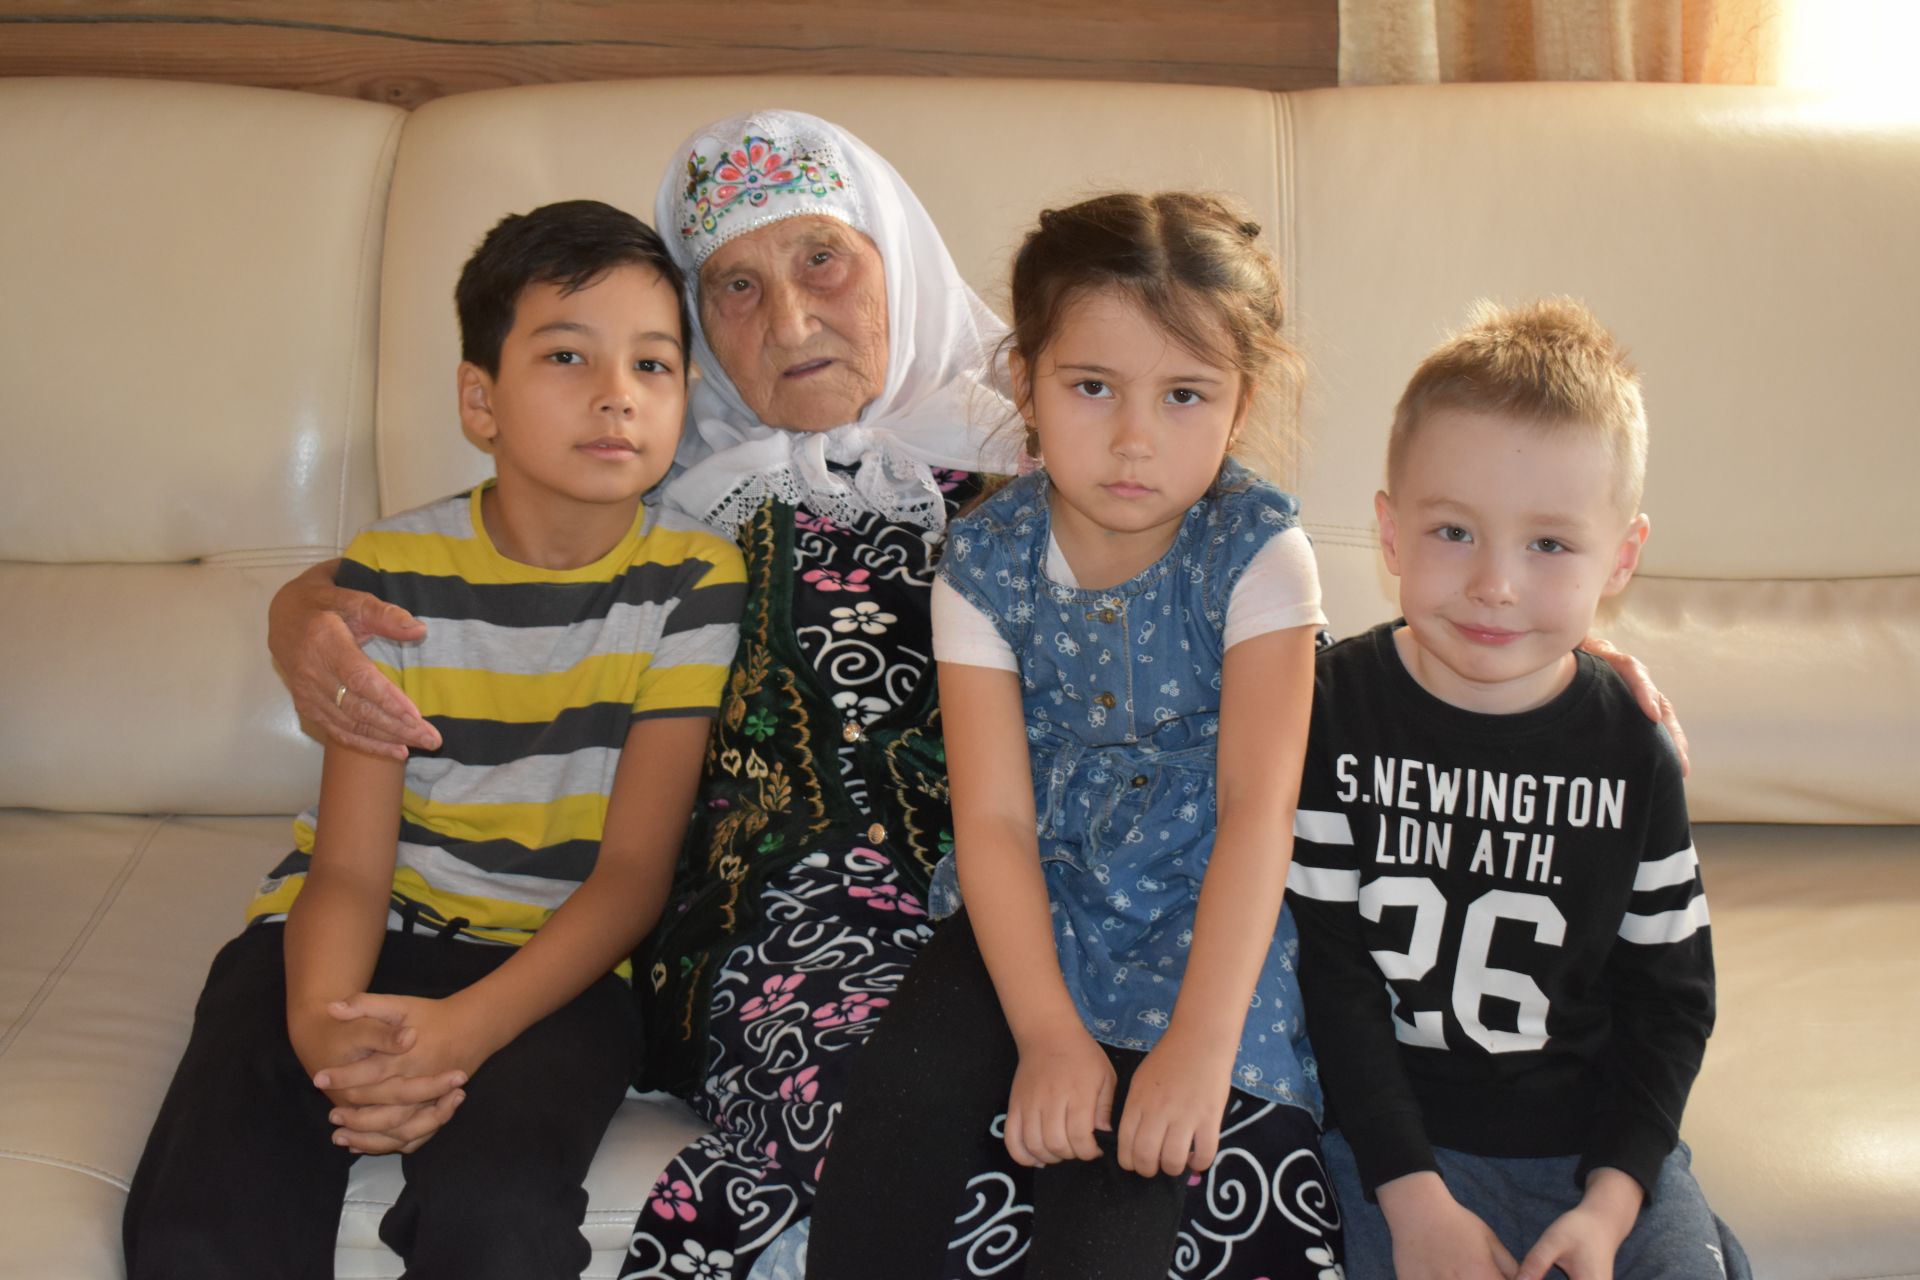 Жительница села Конь отметила свой юбилей – 90 лет